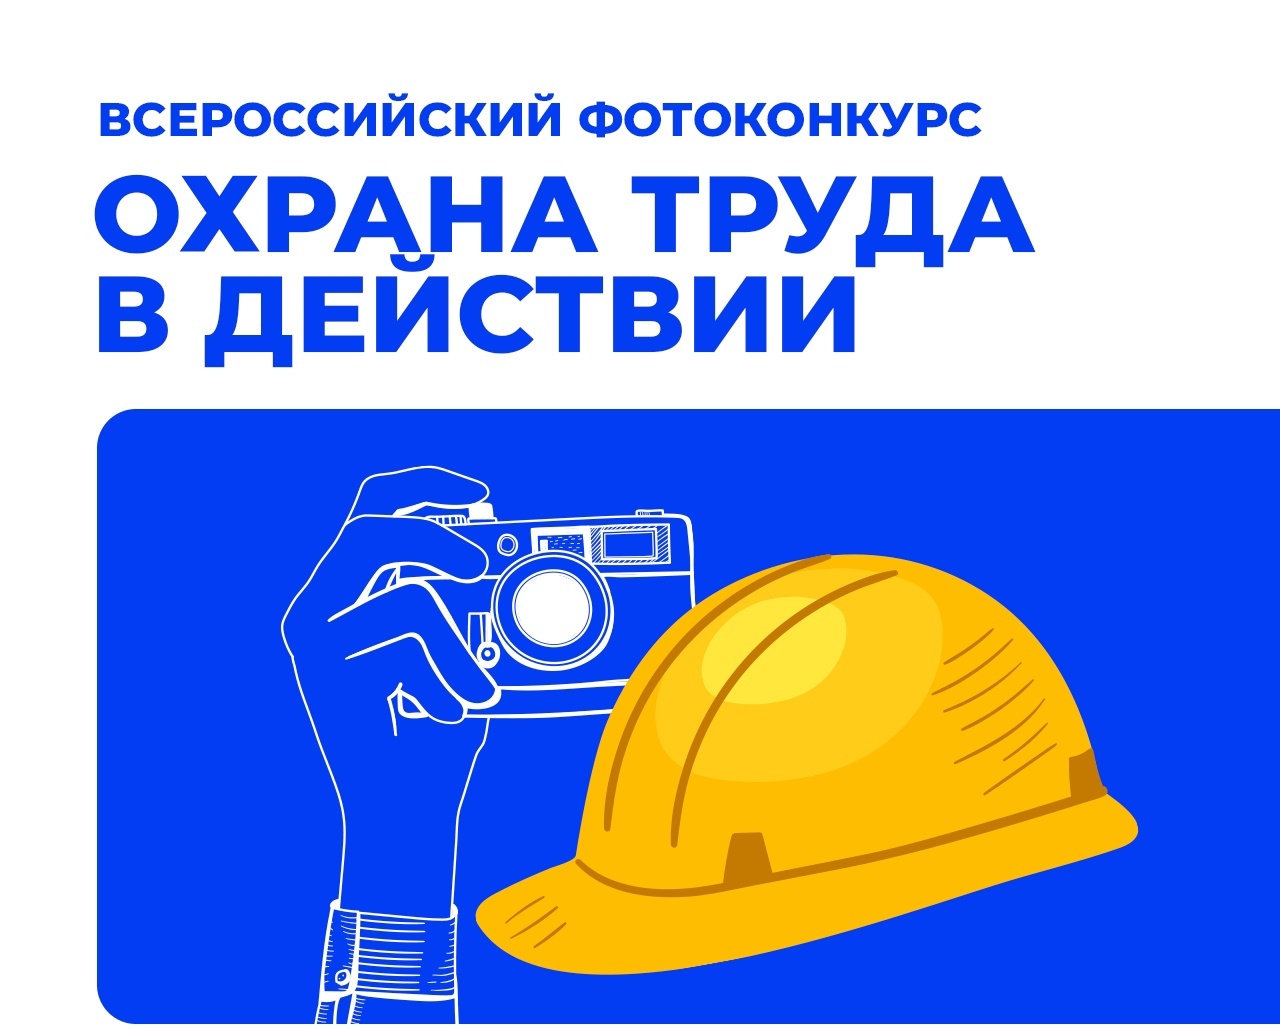 “Охрана труда в действии” – Всероссийский фотоконкурс для любителей, профессионалов и всех, кто интересуется охраной труда.